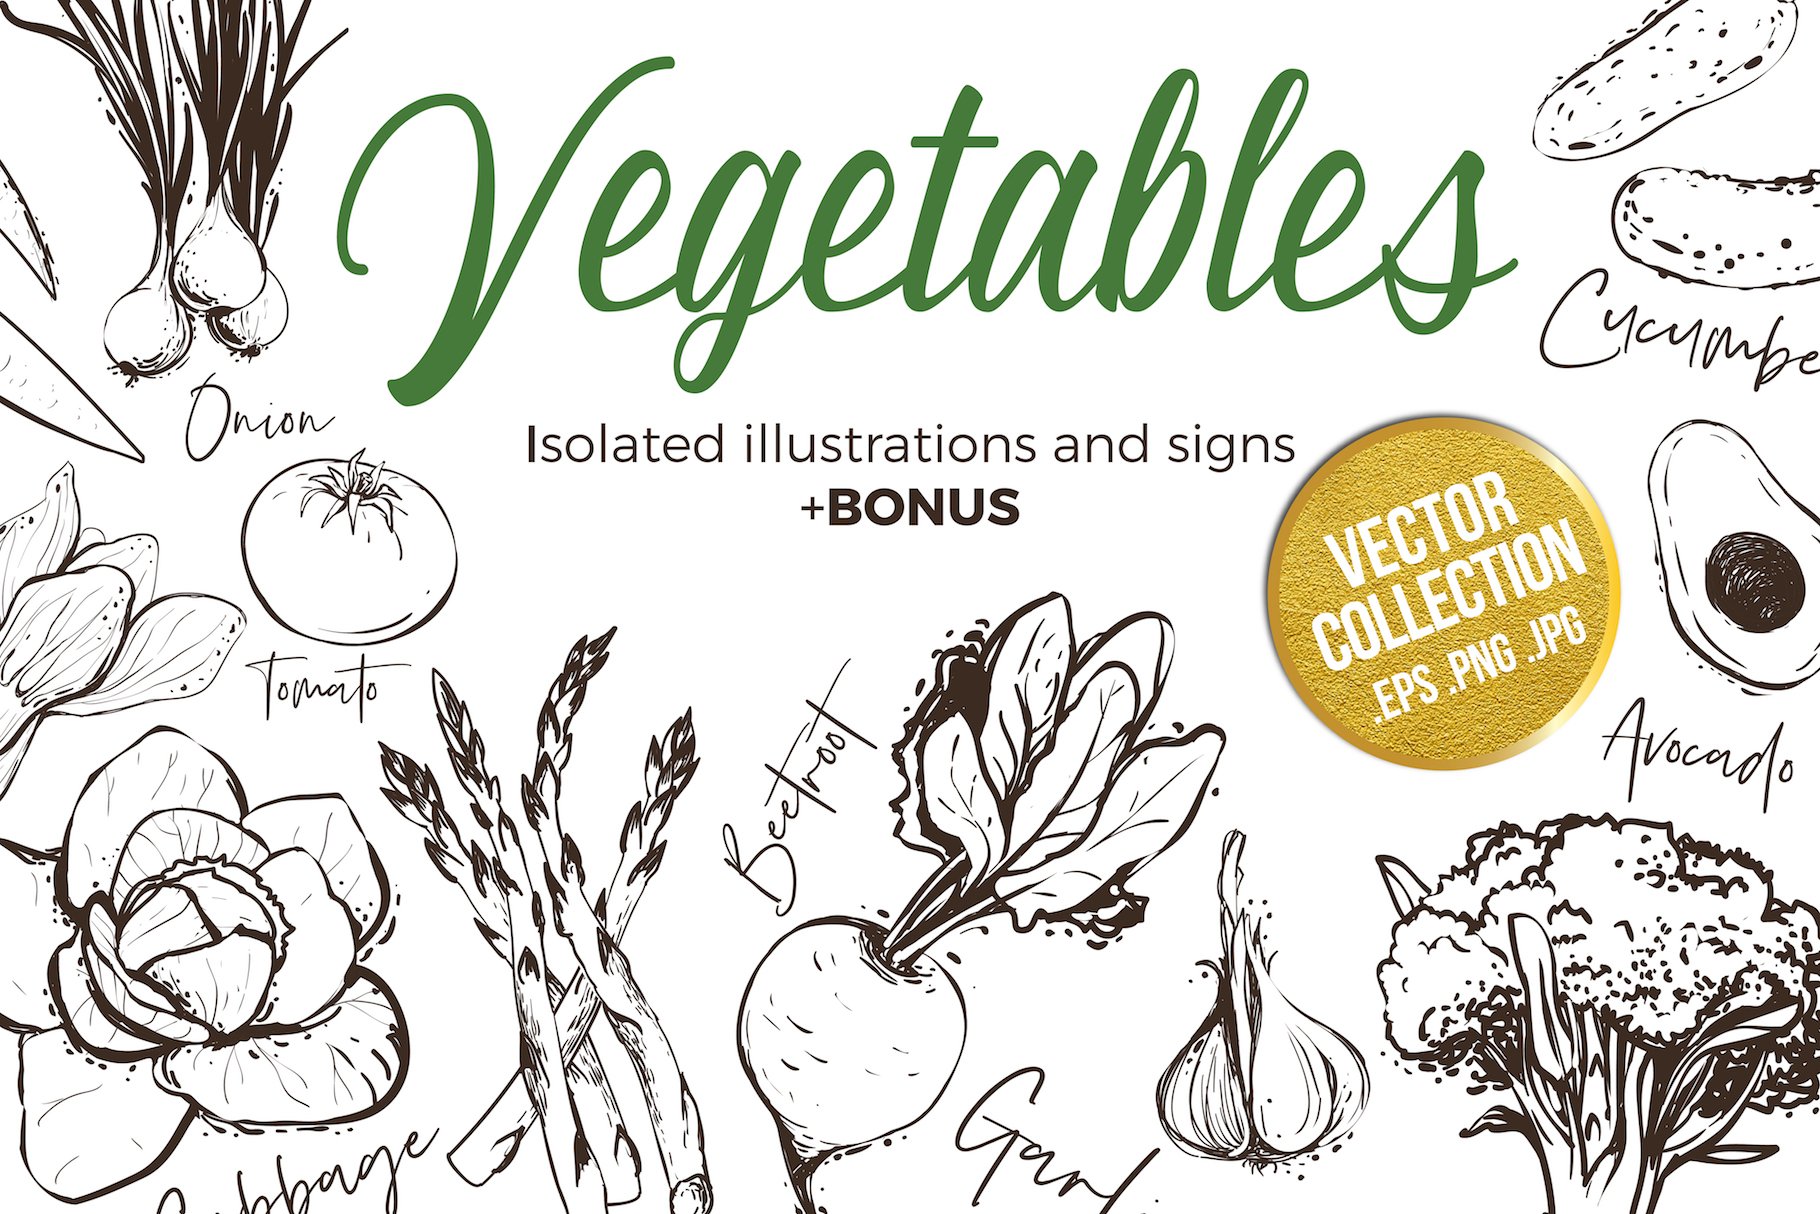 Outline Vegetables Set + Pattens cover image.